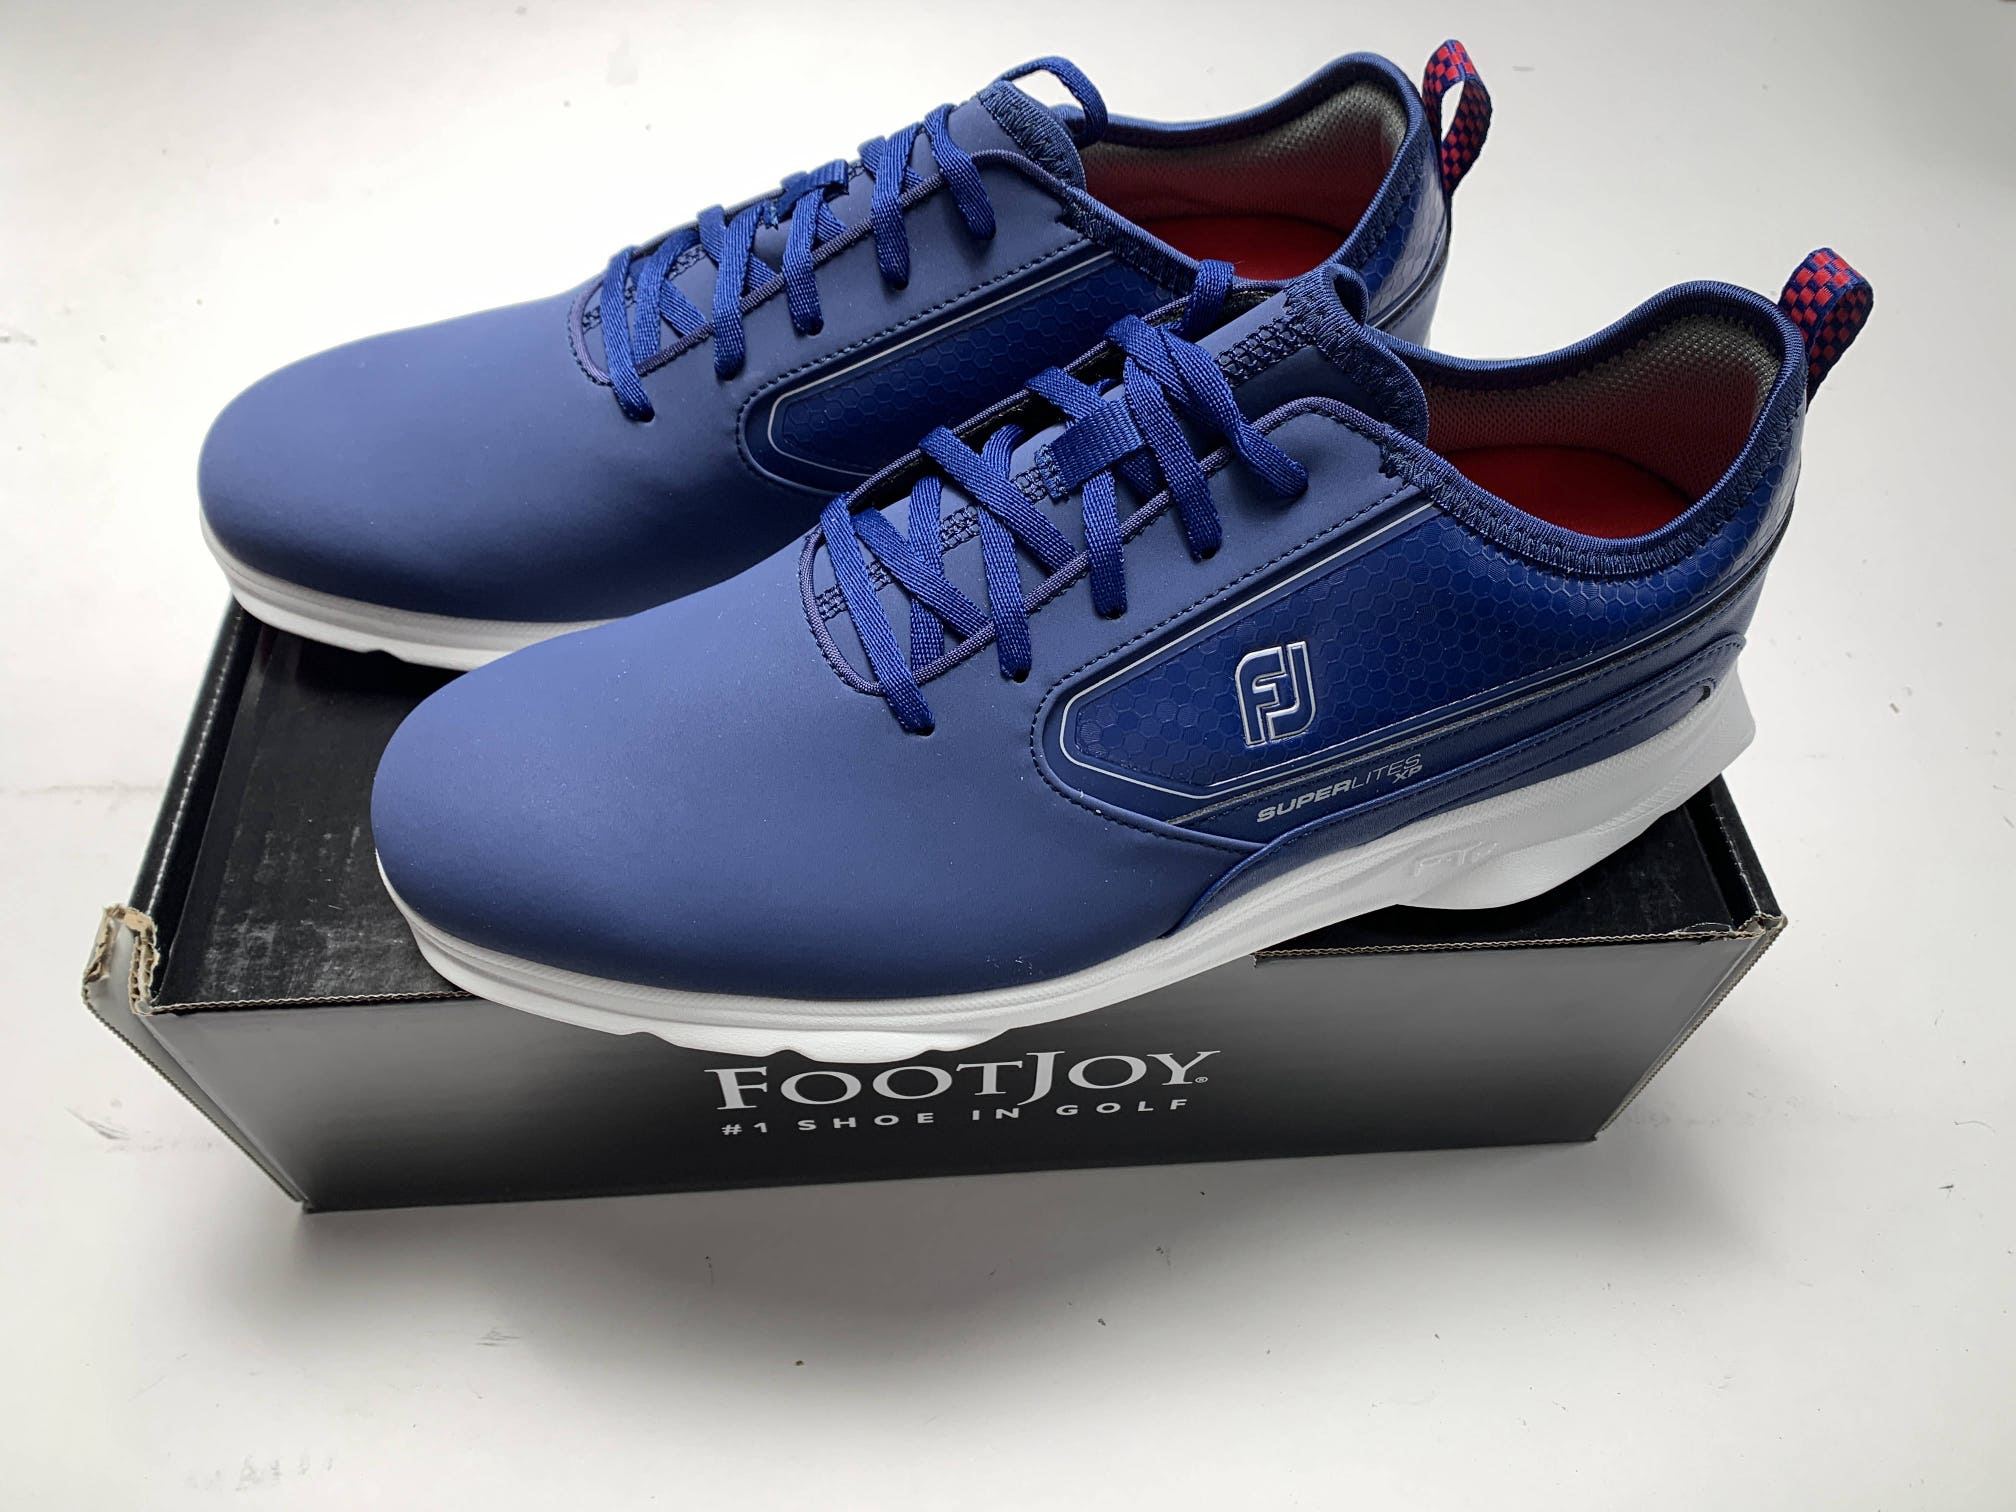 FootJoy Superlites XP Golf Shoes Blue Red White Men's SZ 10.5 (58090)